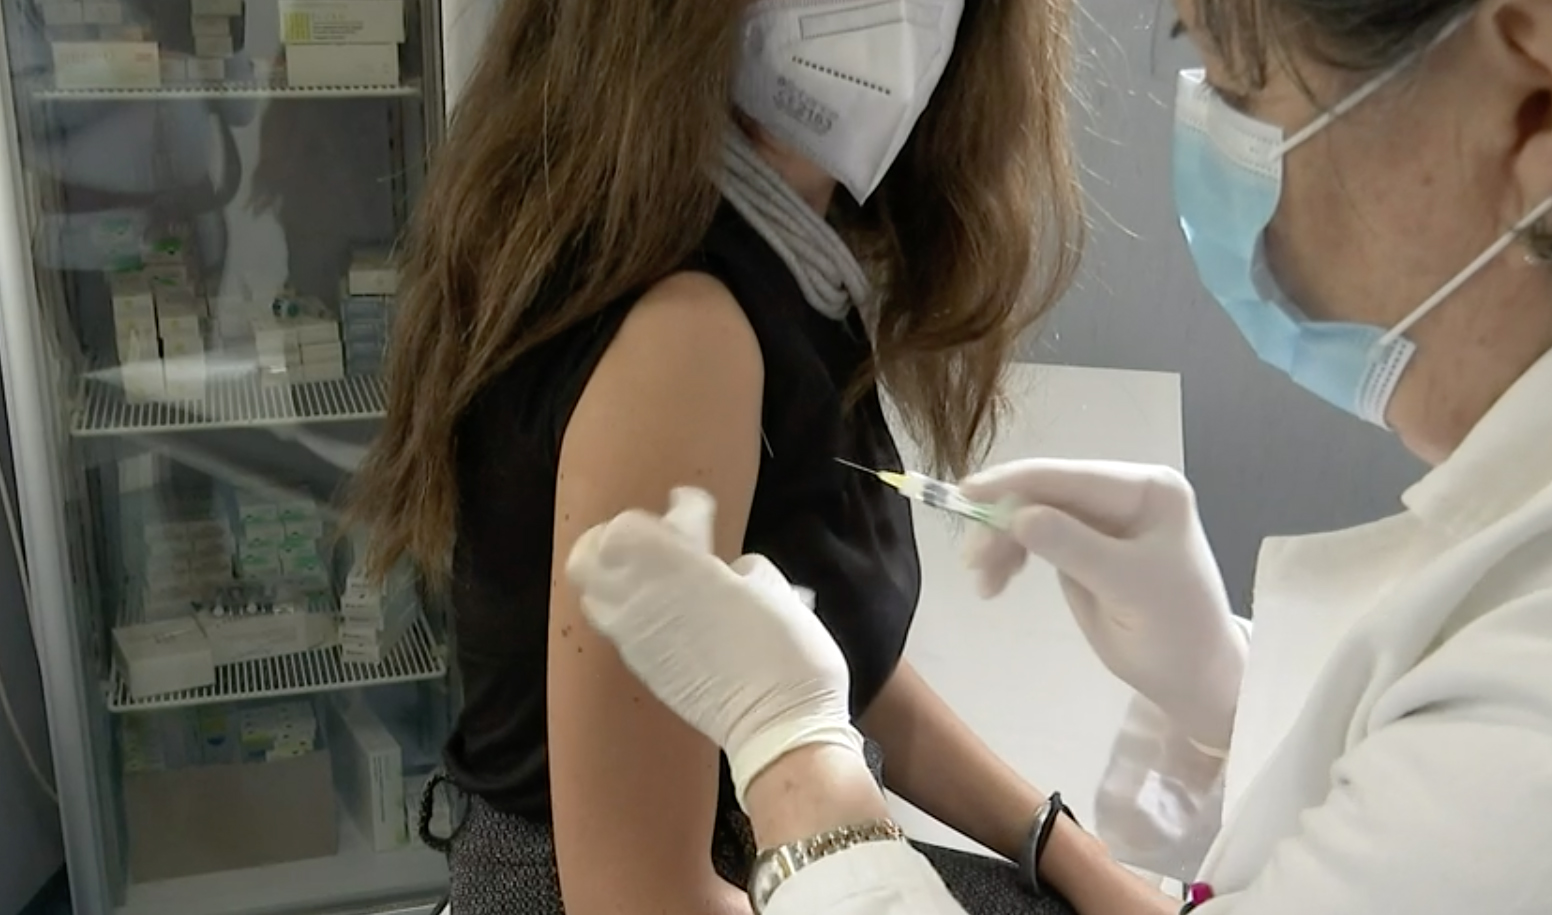 Campania prima in Italia anche per vaccinazione dei medici: già 3130